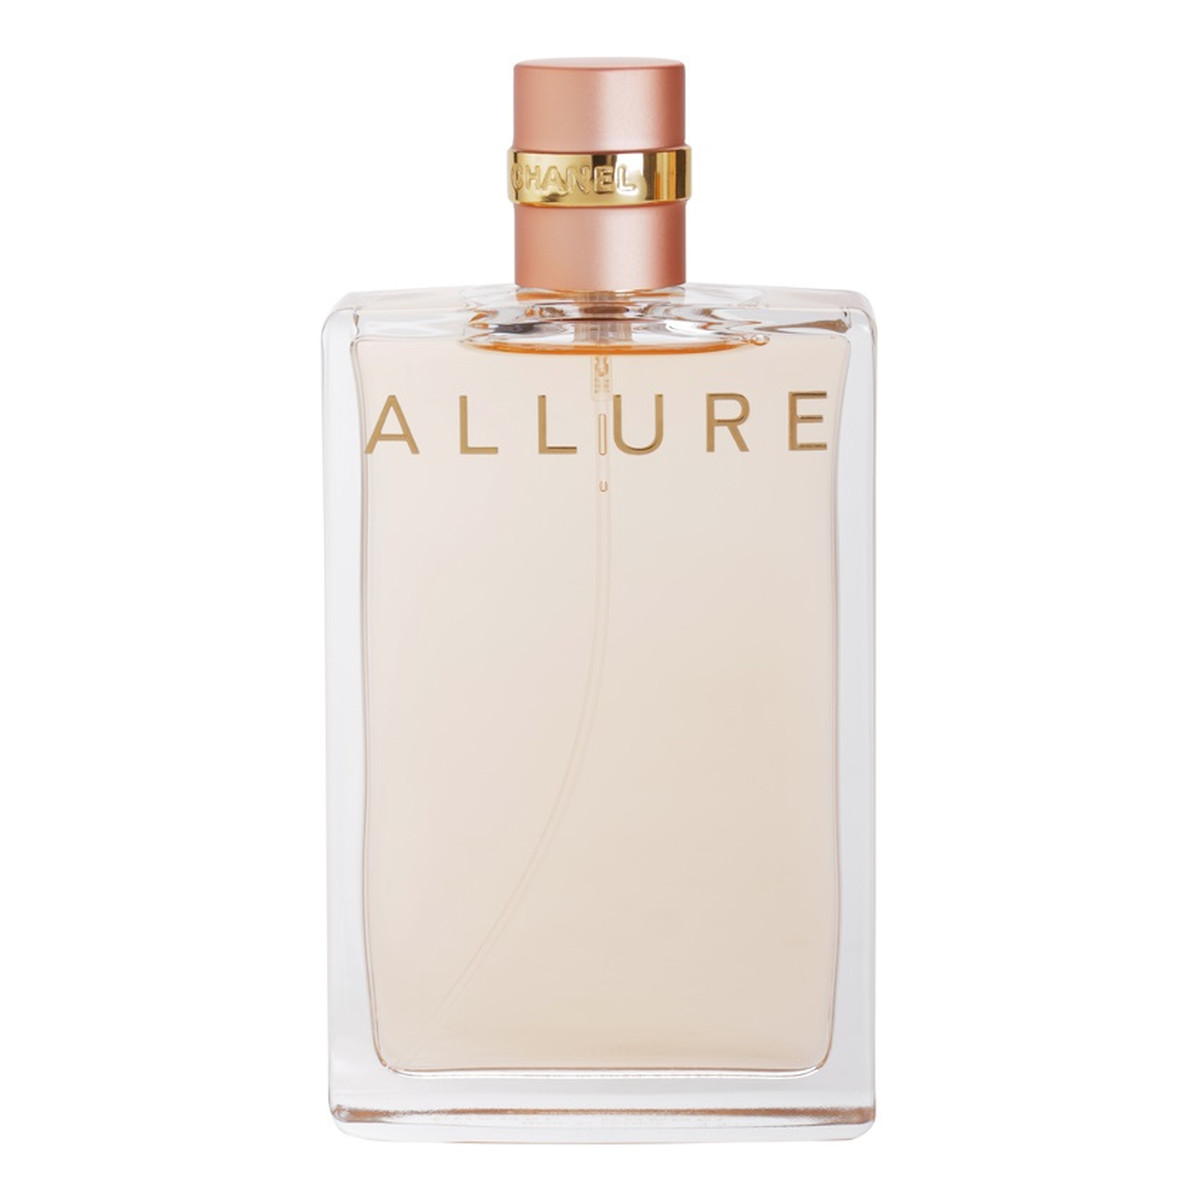 Chanel Allure woda perfumowana dla kobiet 100ml